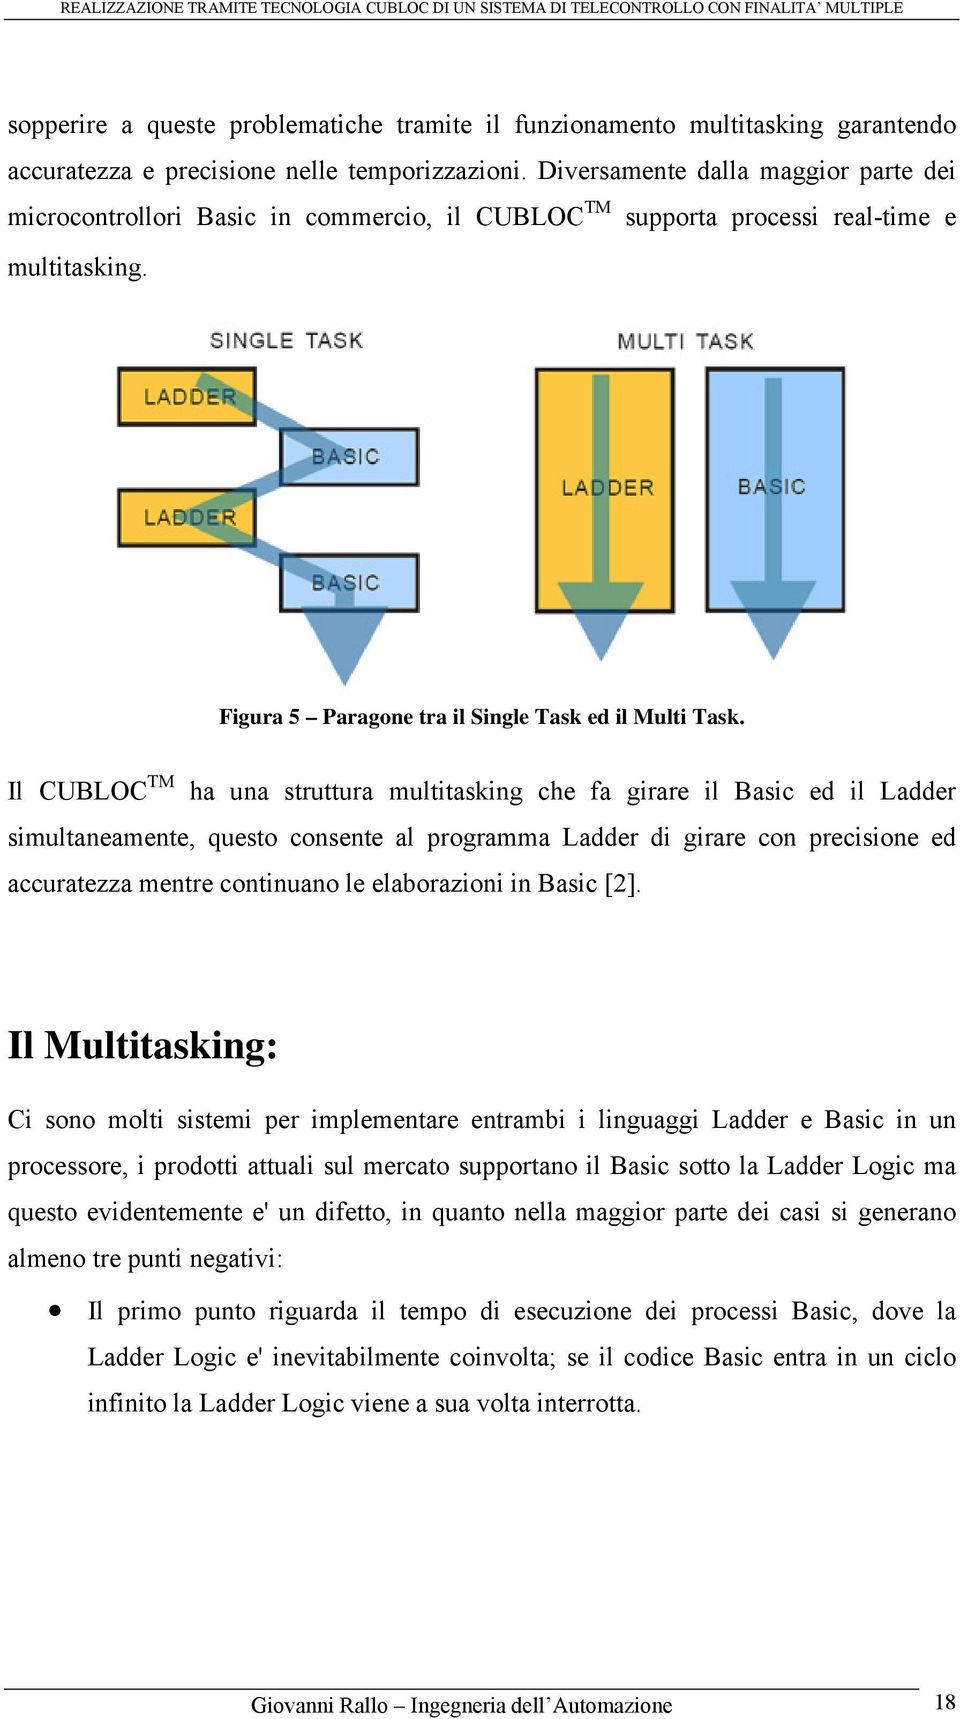 Il CUBLOC TM ha una struttura multitasking che fa girare il Basic ed il Ladder simultaneamente, questo consente al programma Ladder di girare con precisione ed accuratezza mentre continuano le